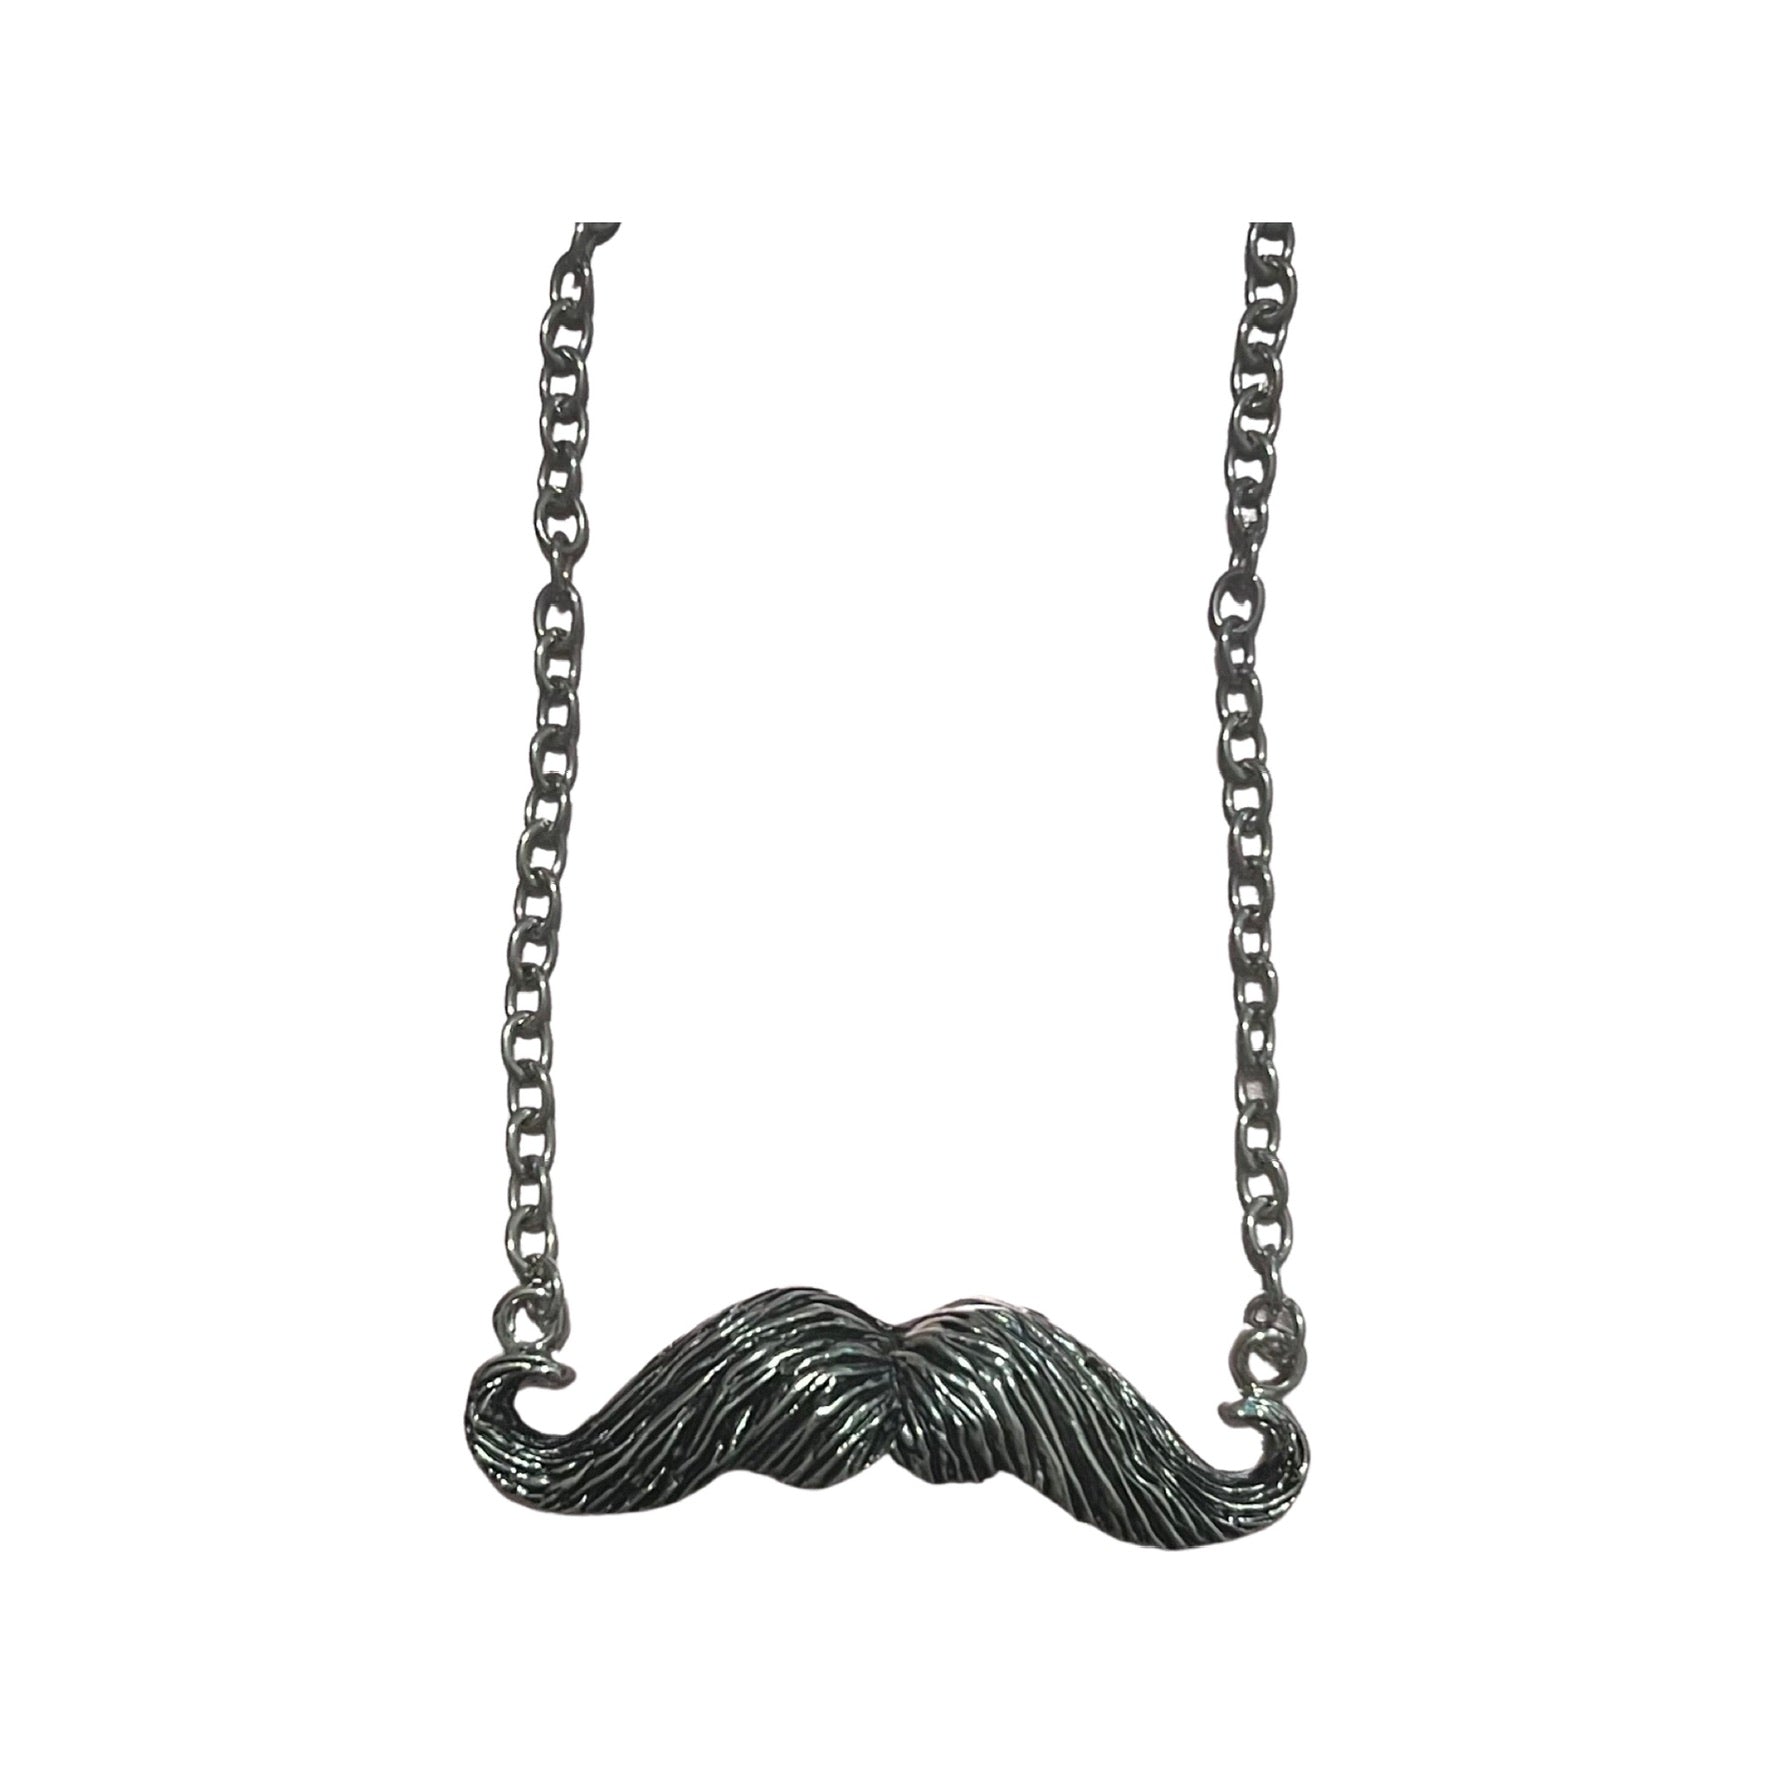 Mustache Necklace